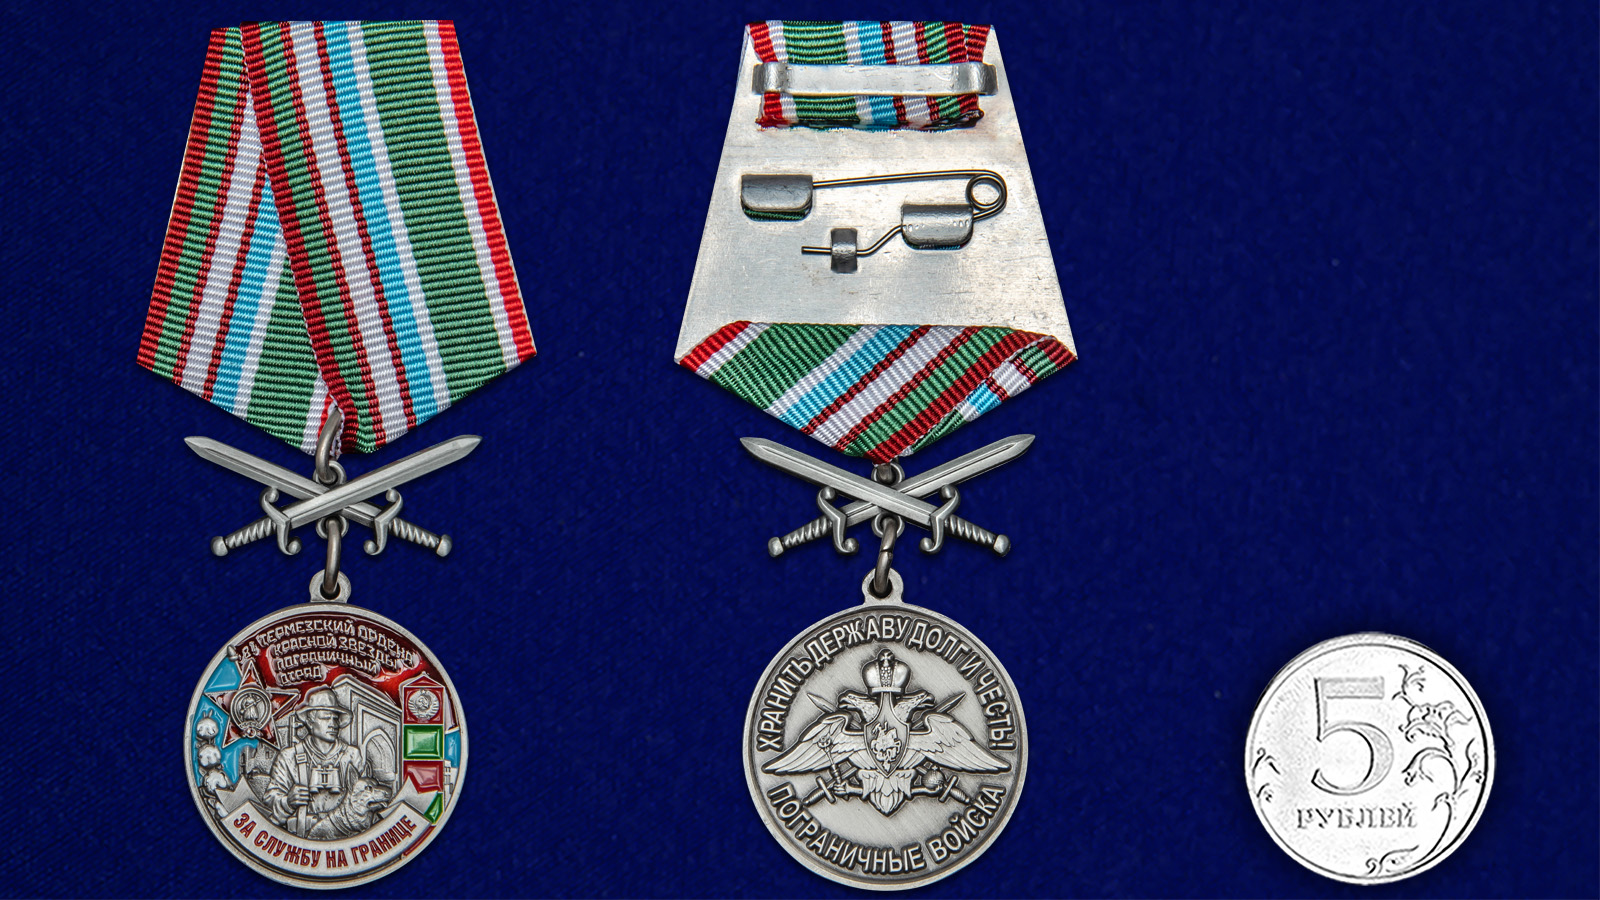 Медаль "За службу в Термезском пограничном отряде" 